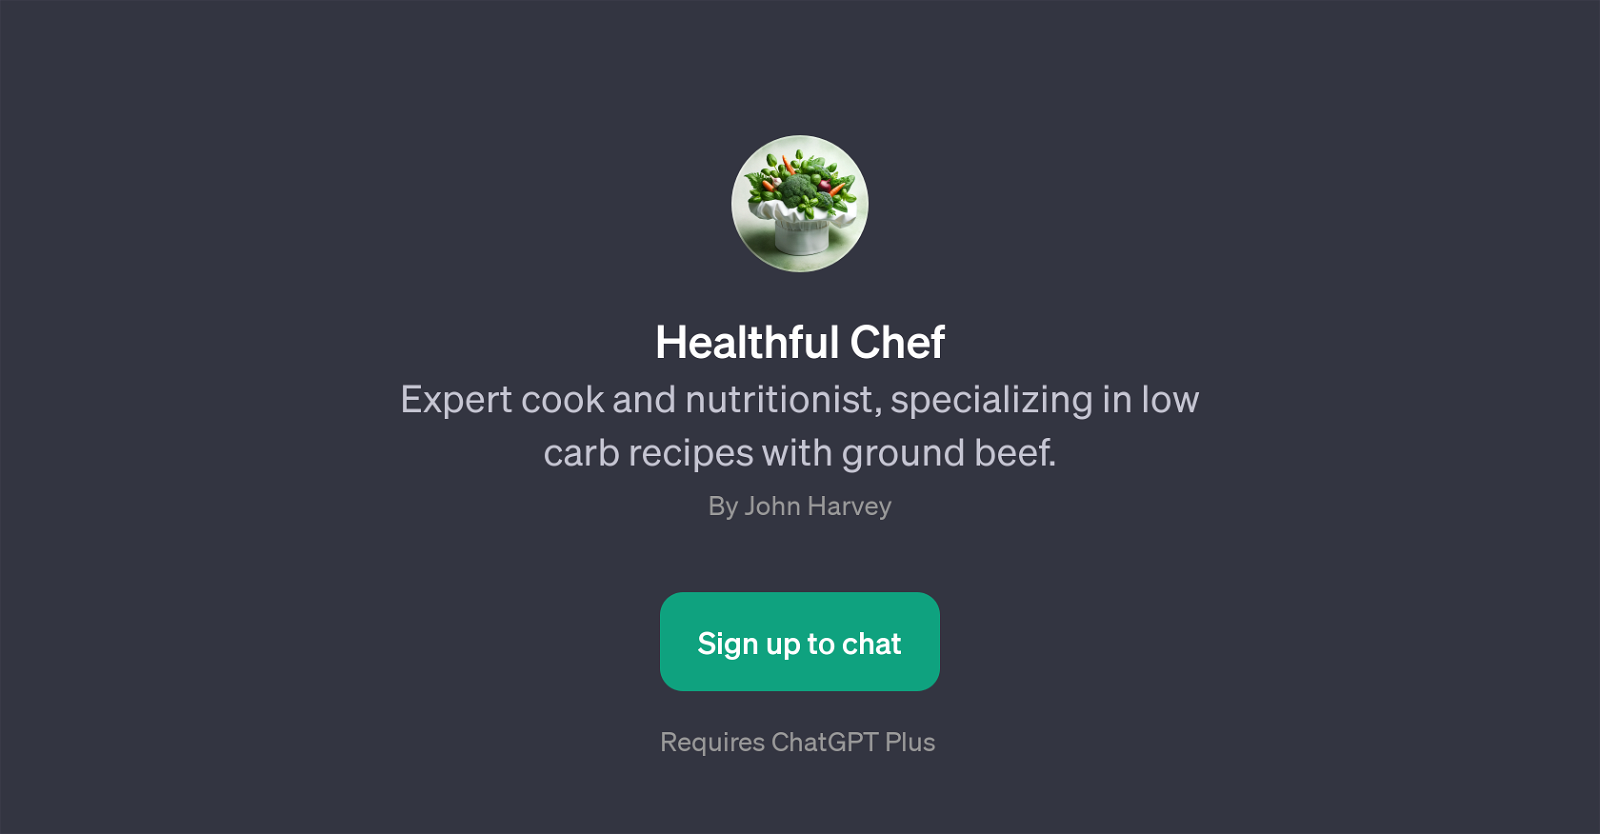 Healthful Chef website